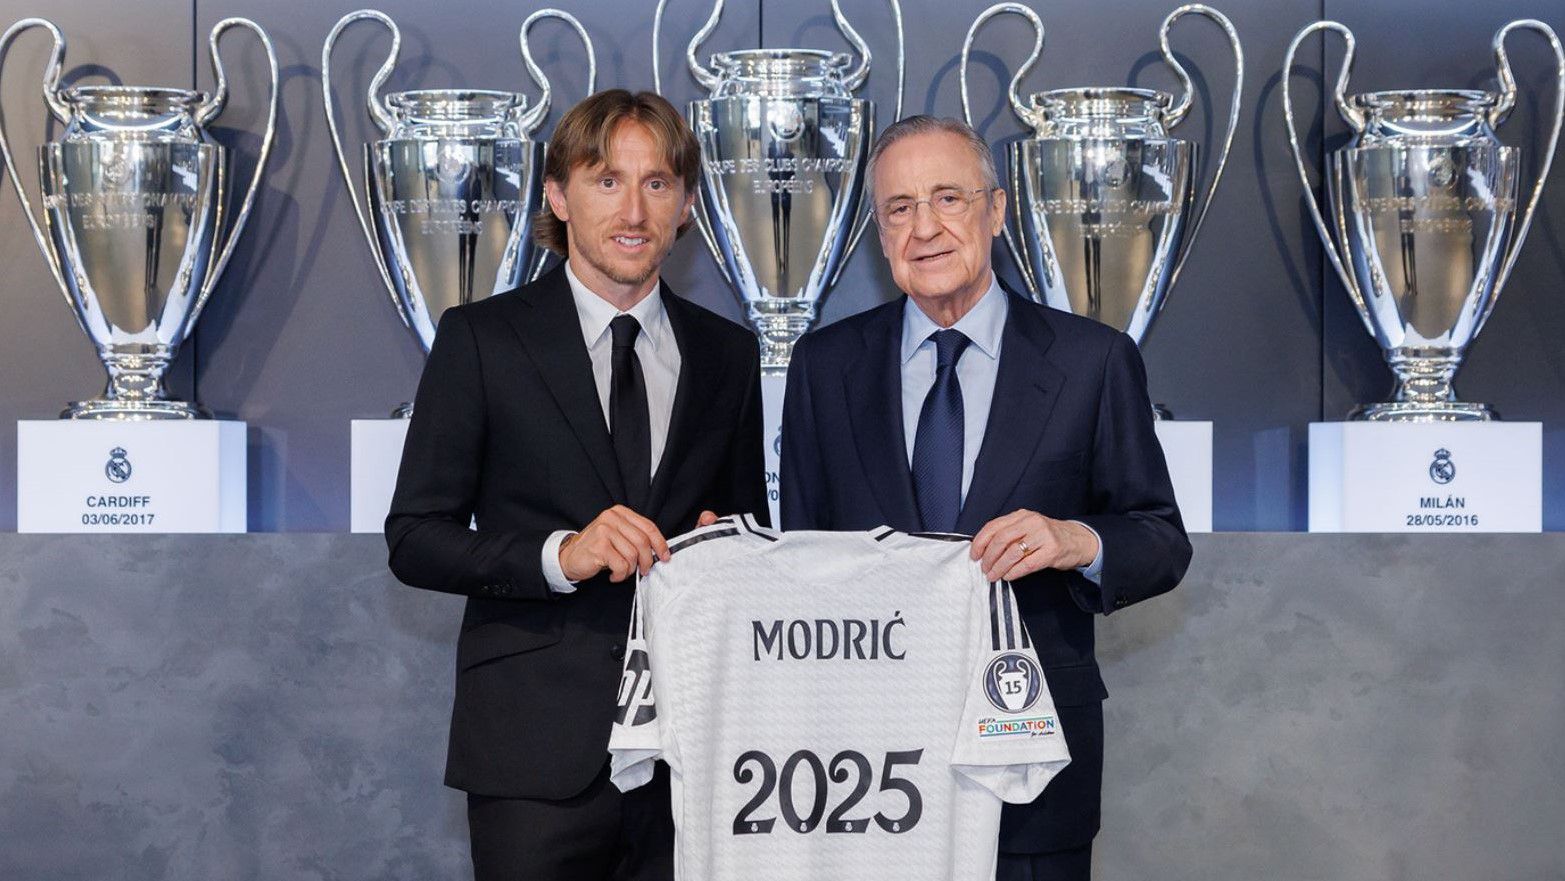 Itt a nagy bejelentés, eldőlt Modric jövője a Real Madridnál!